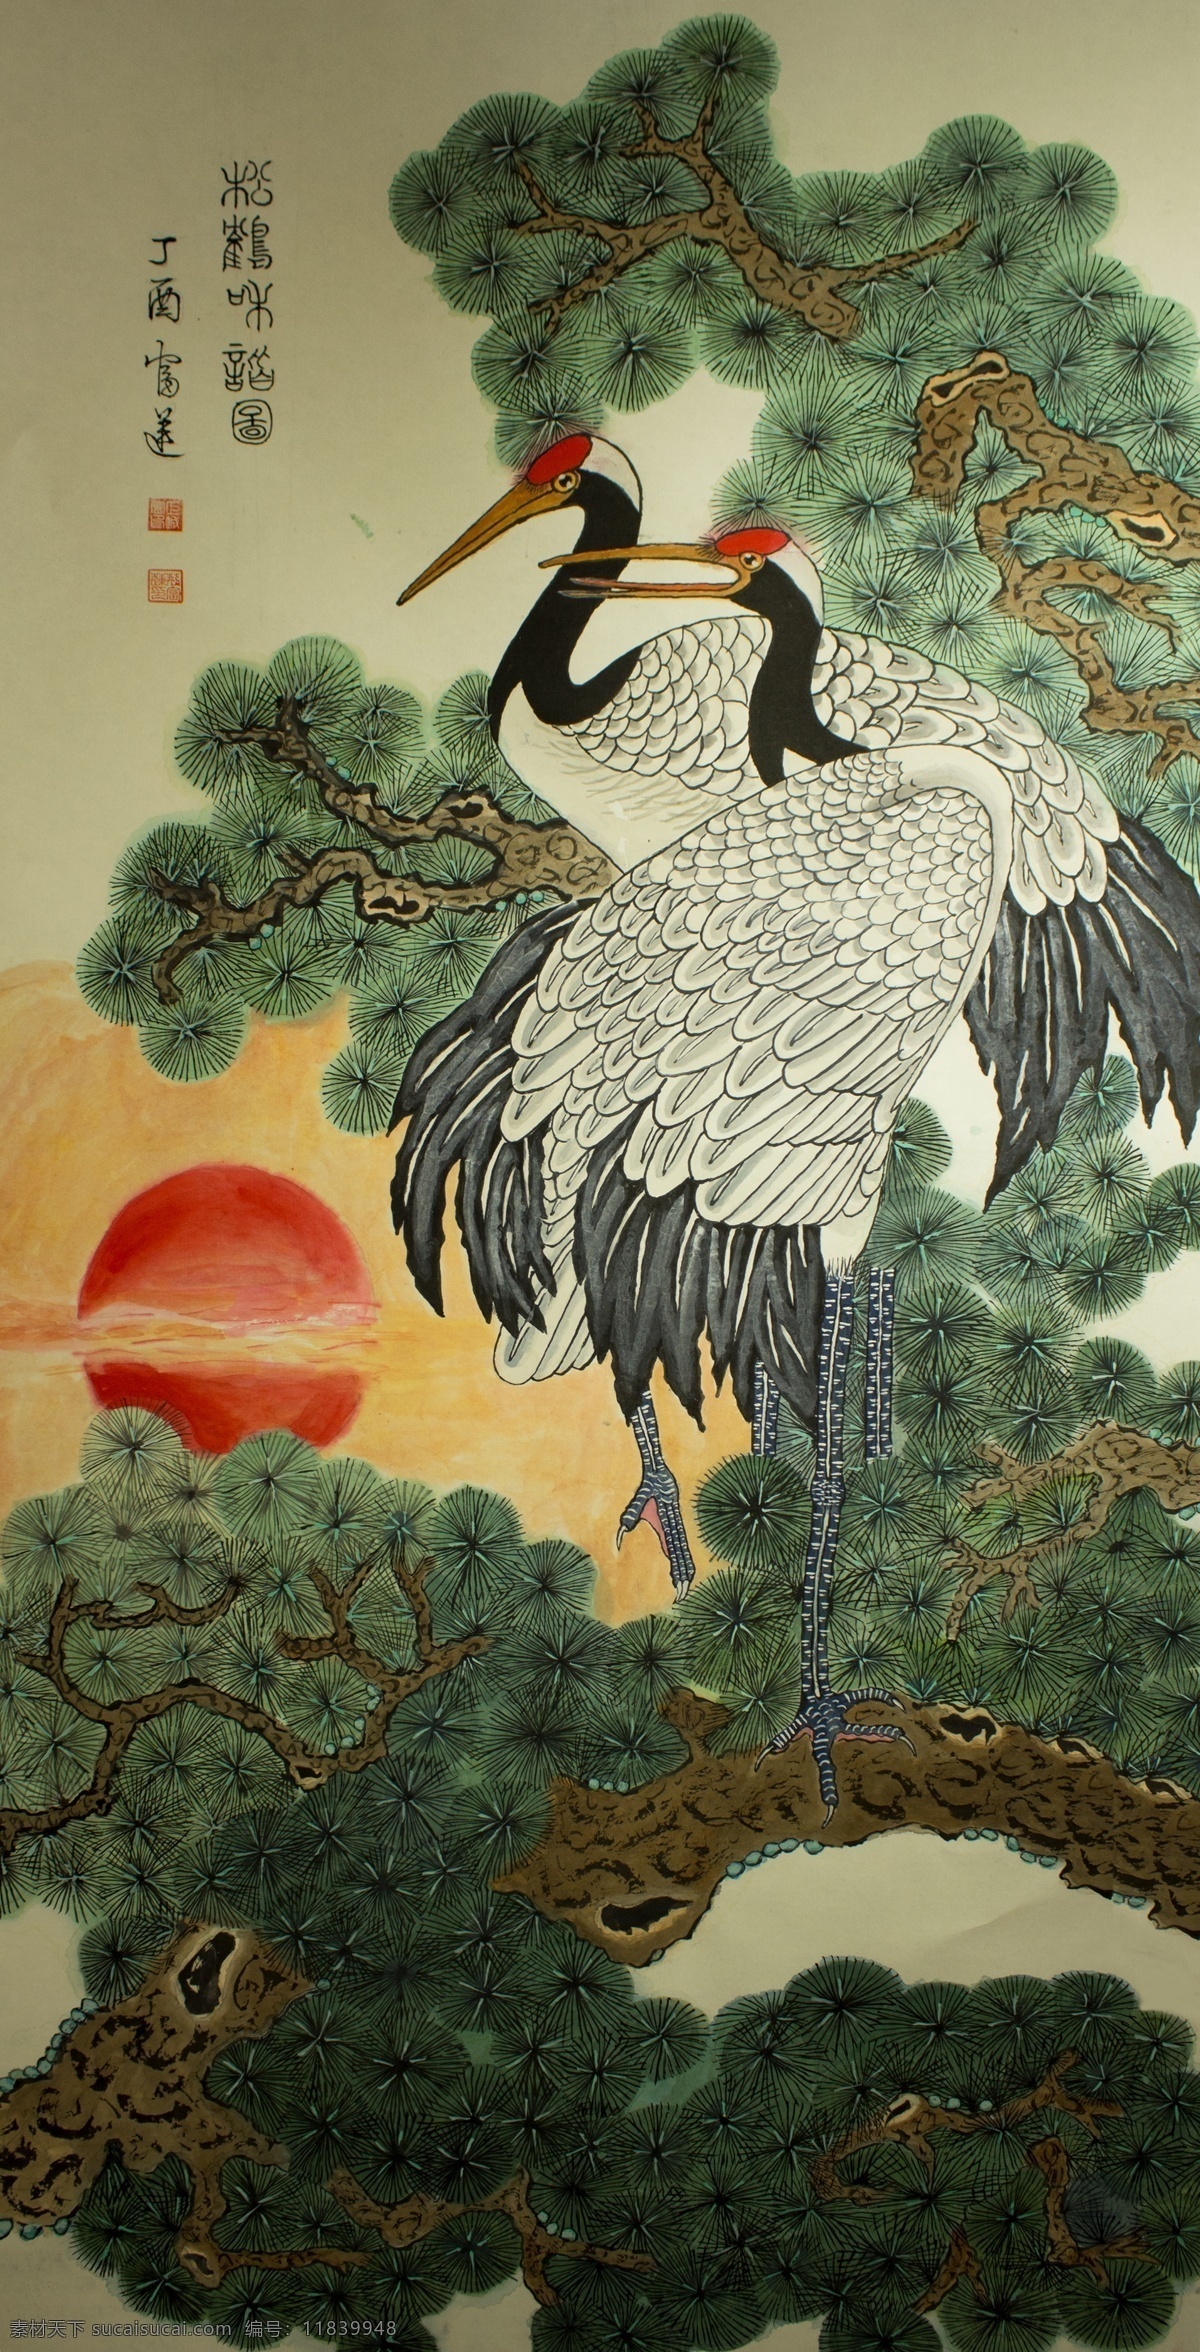 松鹤图 松鹤 松树 植物 仙鹤 鸟儿 动物 太阳 贺寿 装饰 生物世界 鸟类